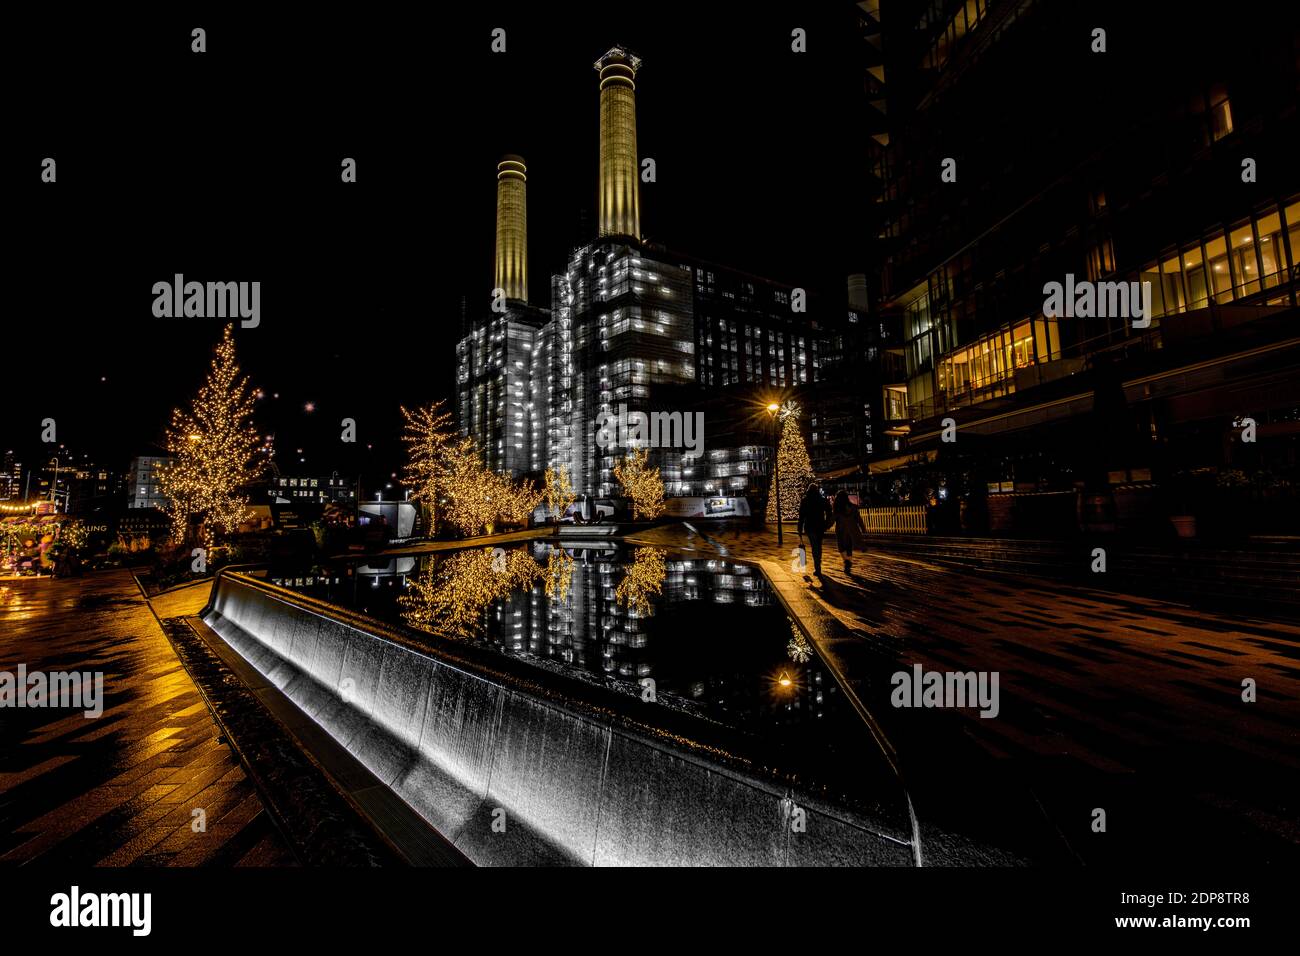 Das ikonische Battersea Kraftwerk und die erhabene Weihnachtsdekoration im Jahr 2020, dem Jahr, in dem COVID Weihnachten dämpfte. Stockfoto